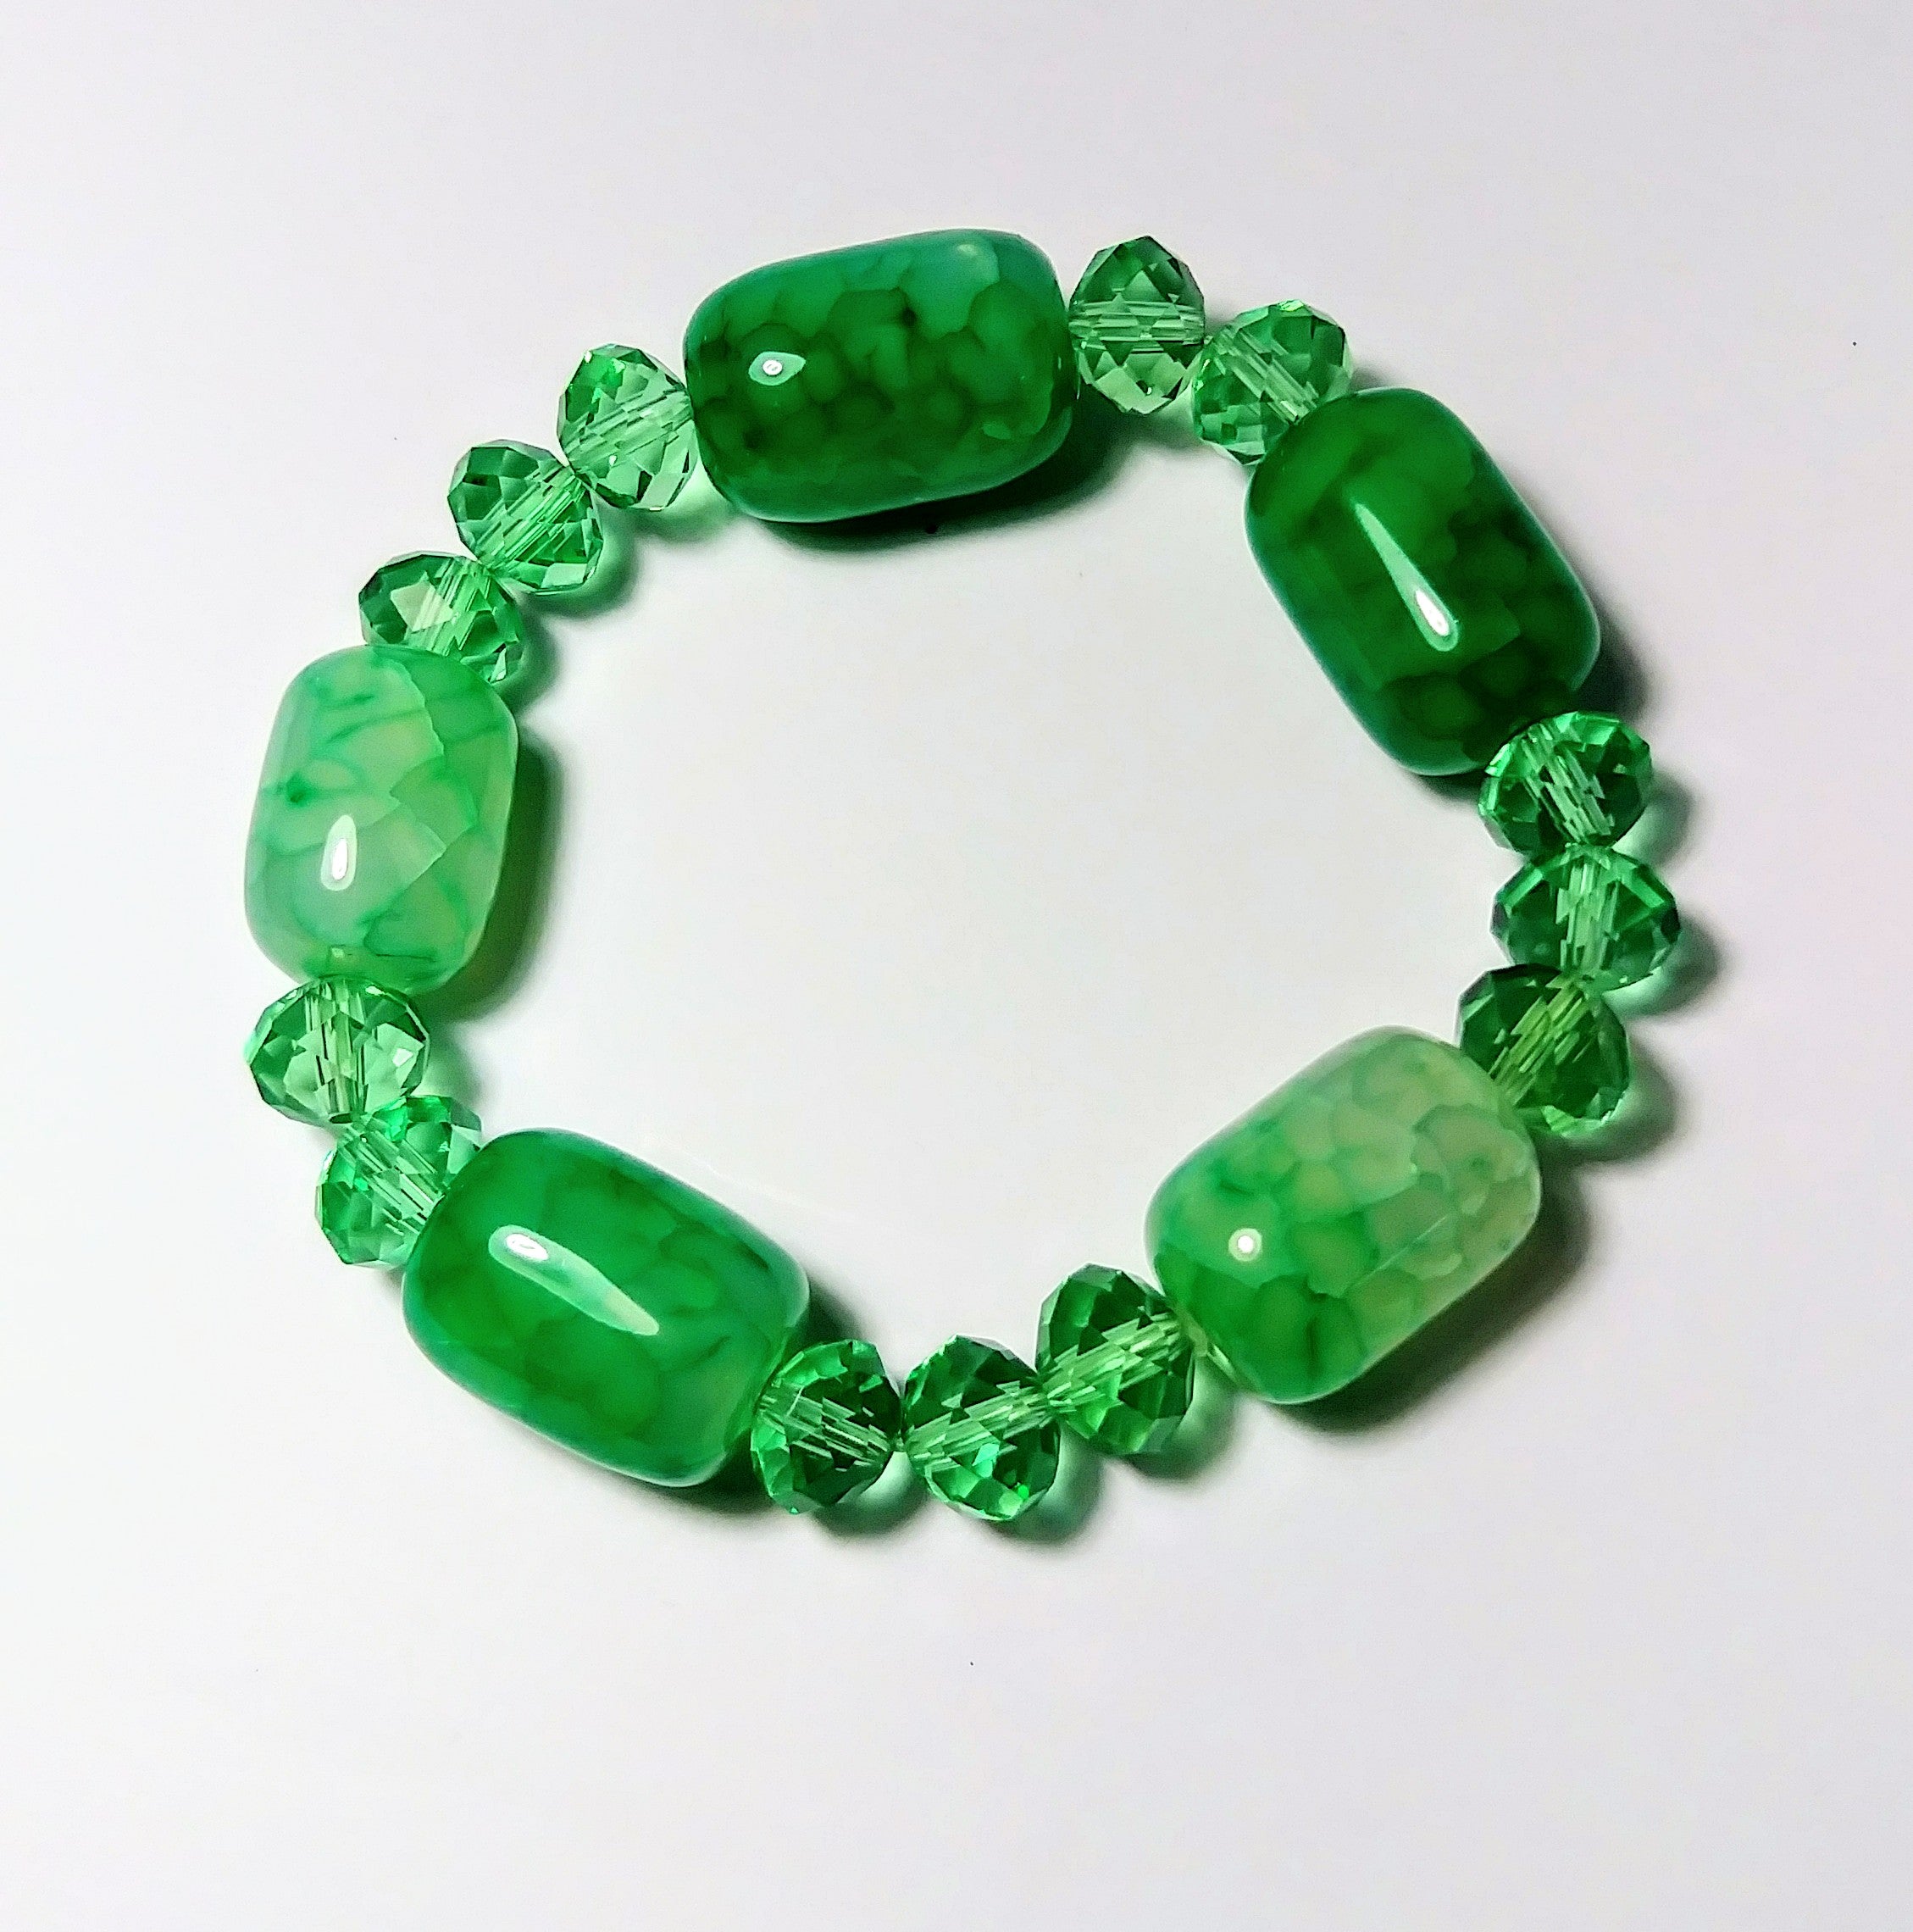 Green jade beans lucky charm bracelet